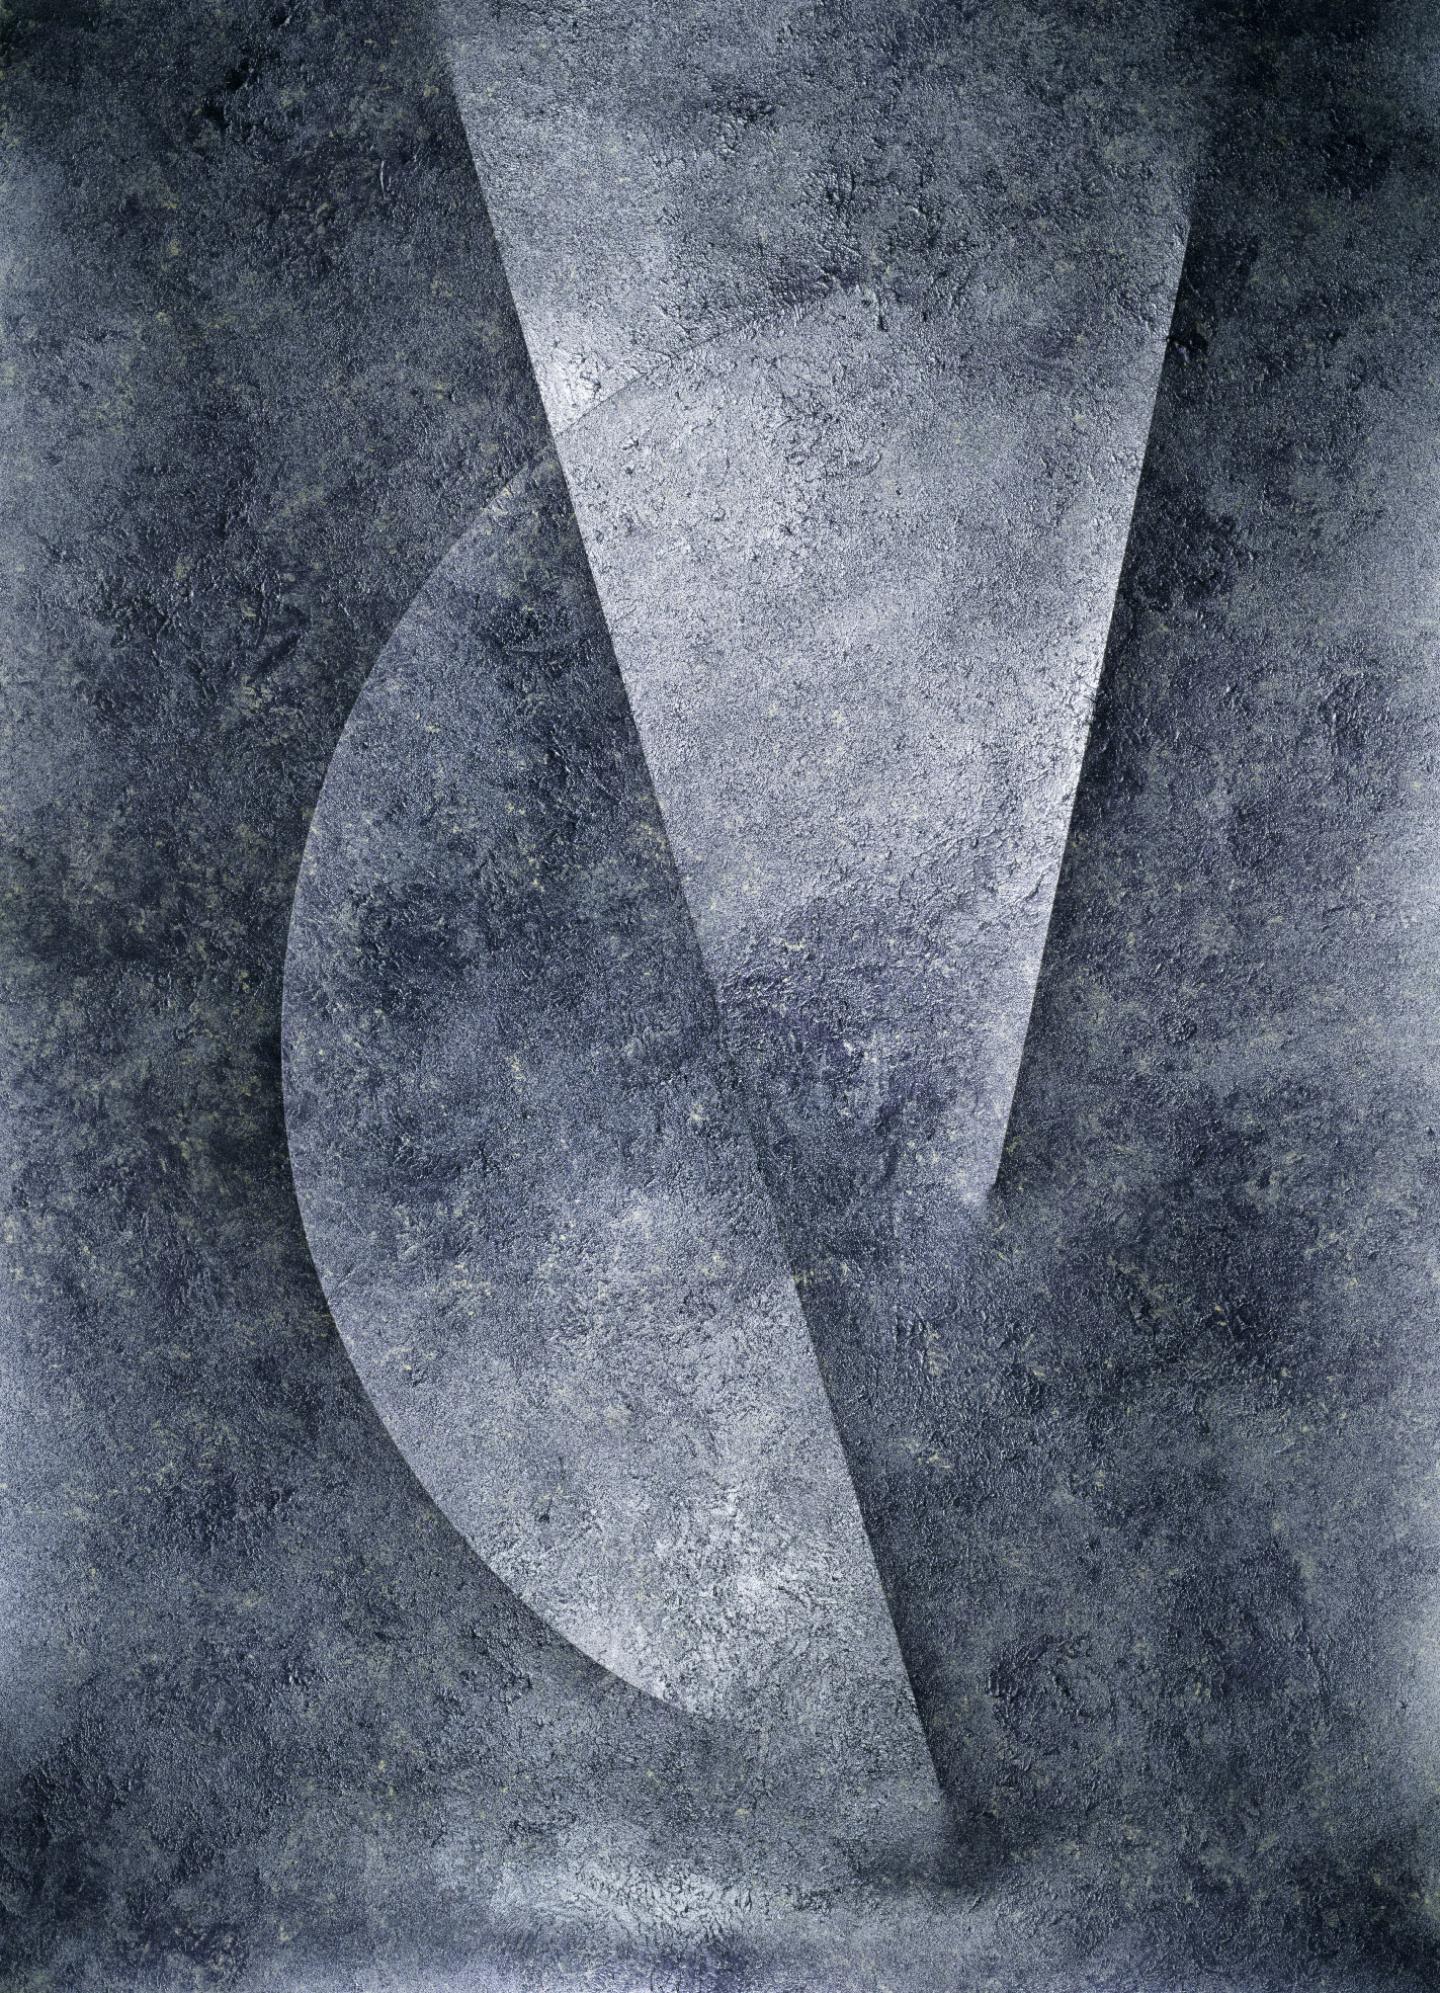 ©Béatrice Helg « Résonance VII », 2019 Tirage pigmentaire 160 x 115,8 cm Edition de 5 exemplaires